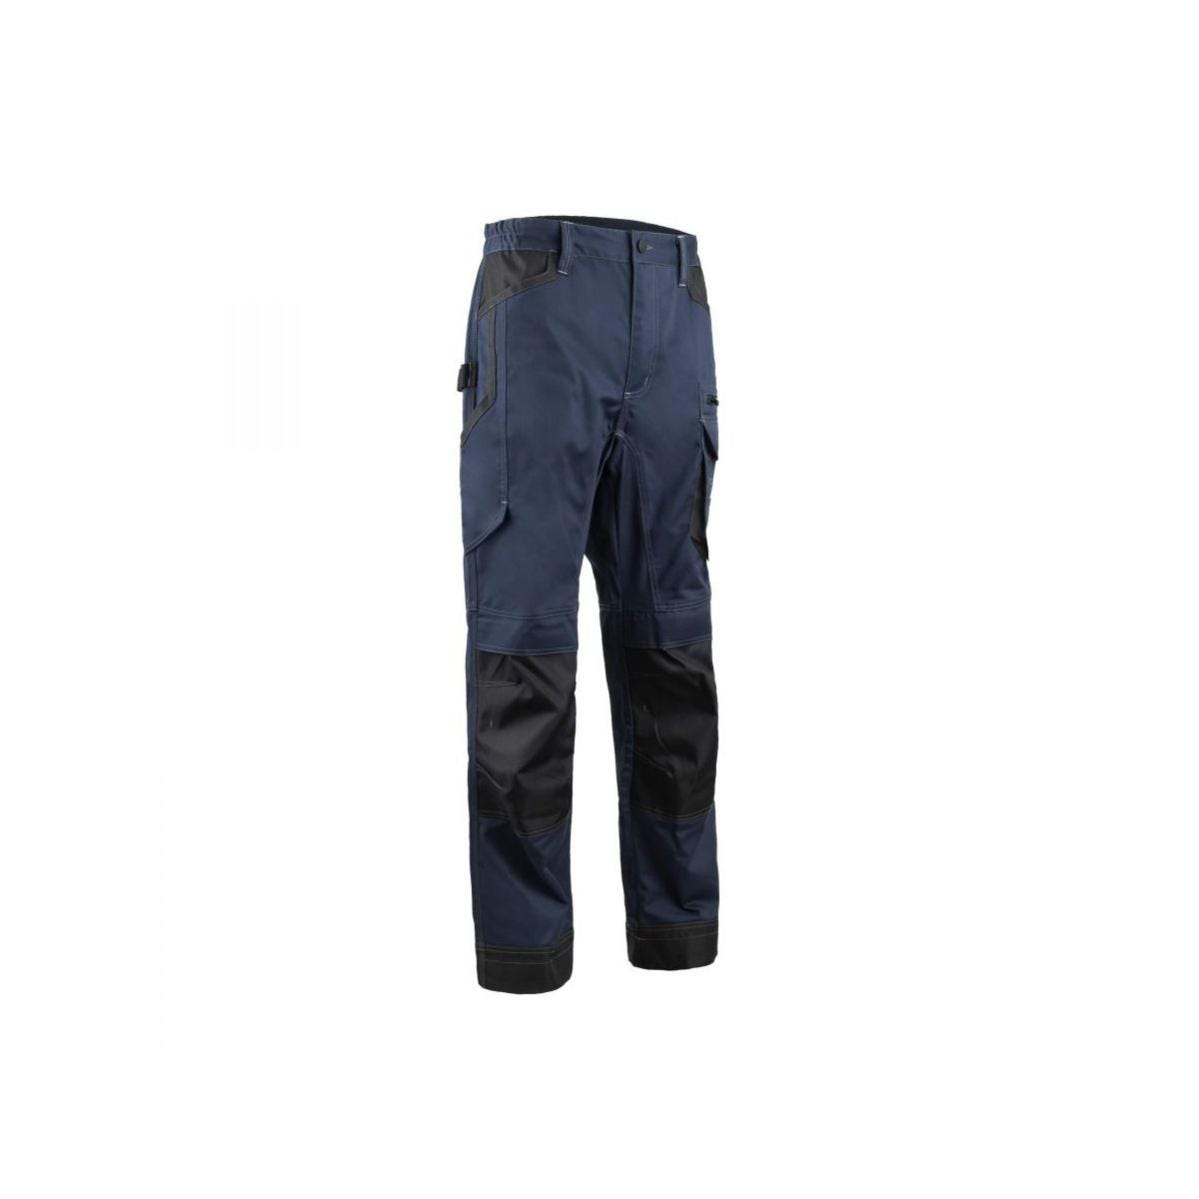 Pantalon BARVA Bleu nuit - Coverguard - Taille S 0